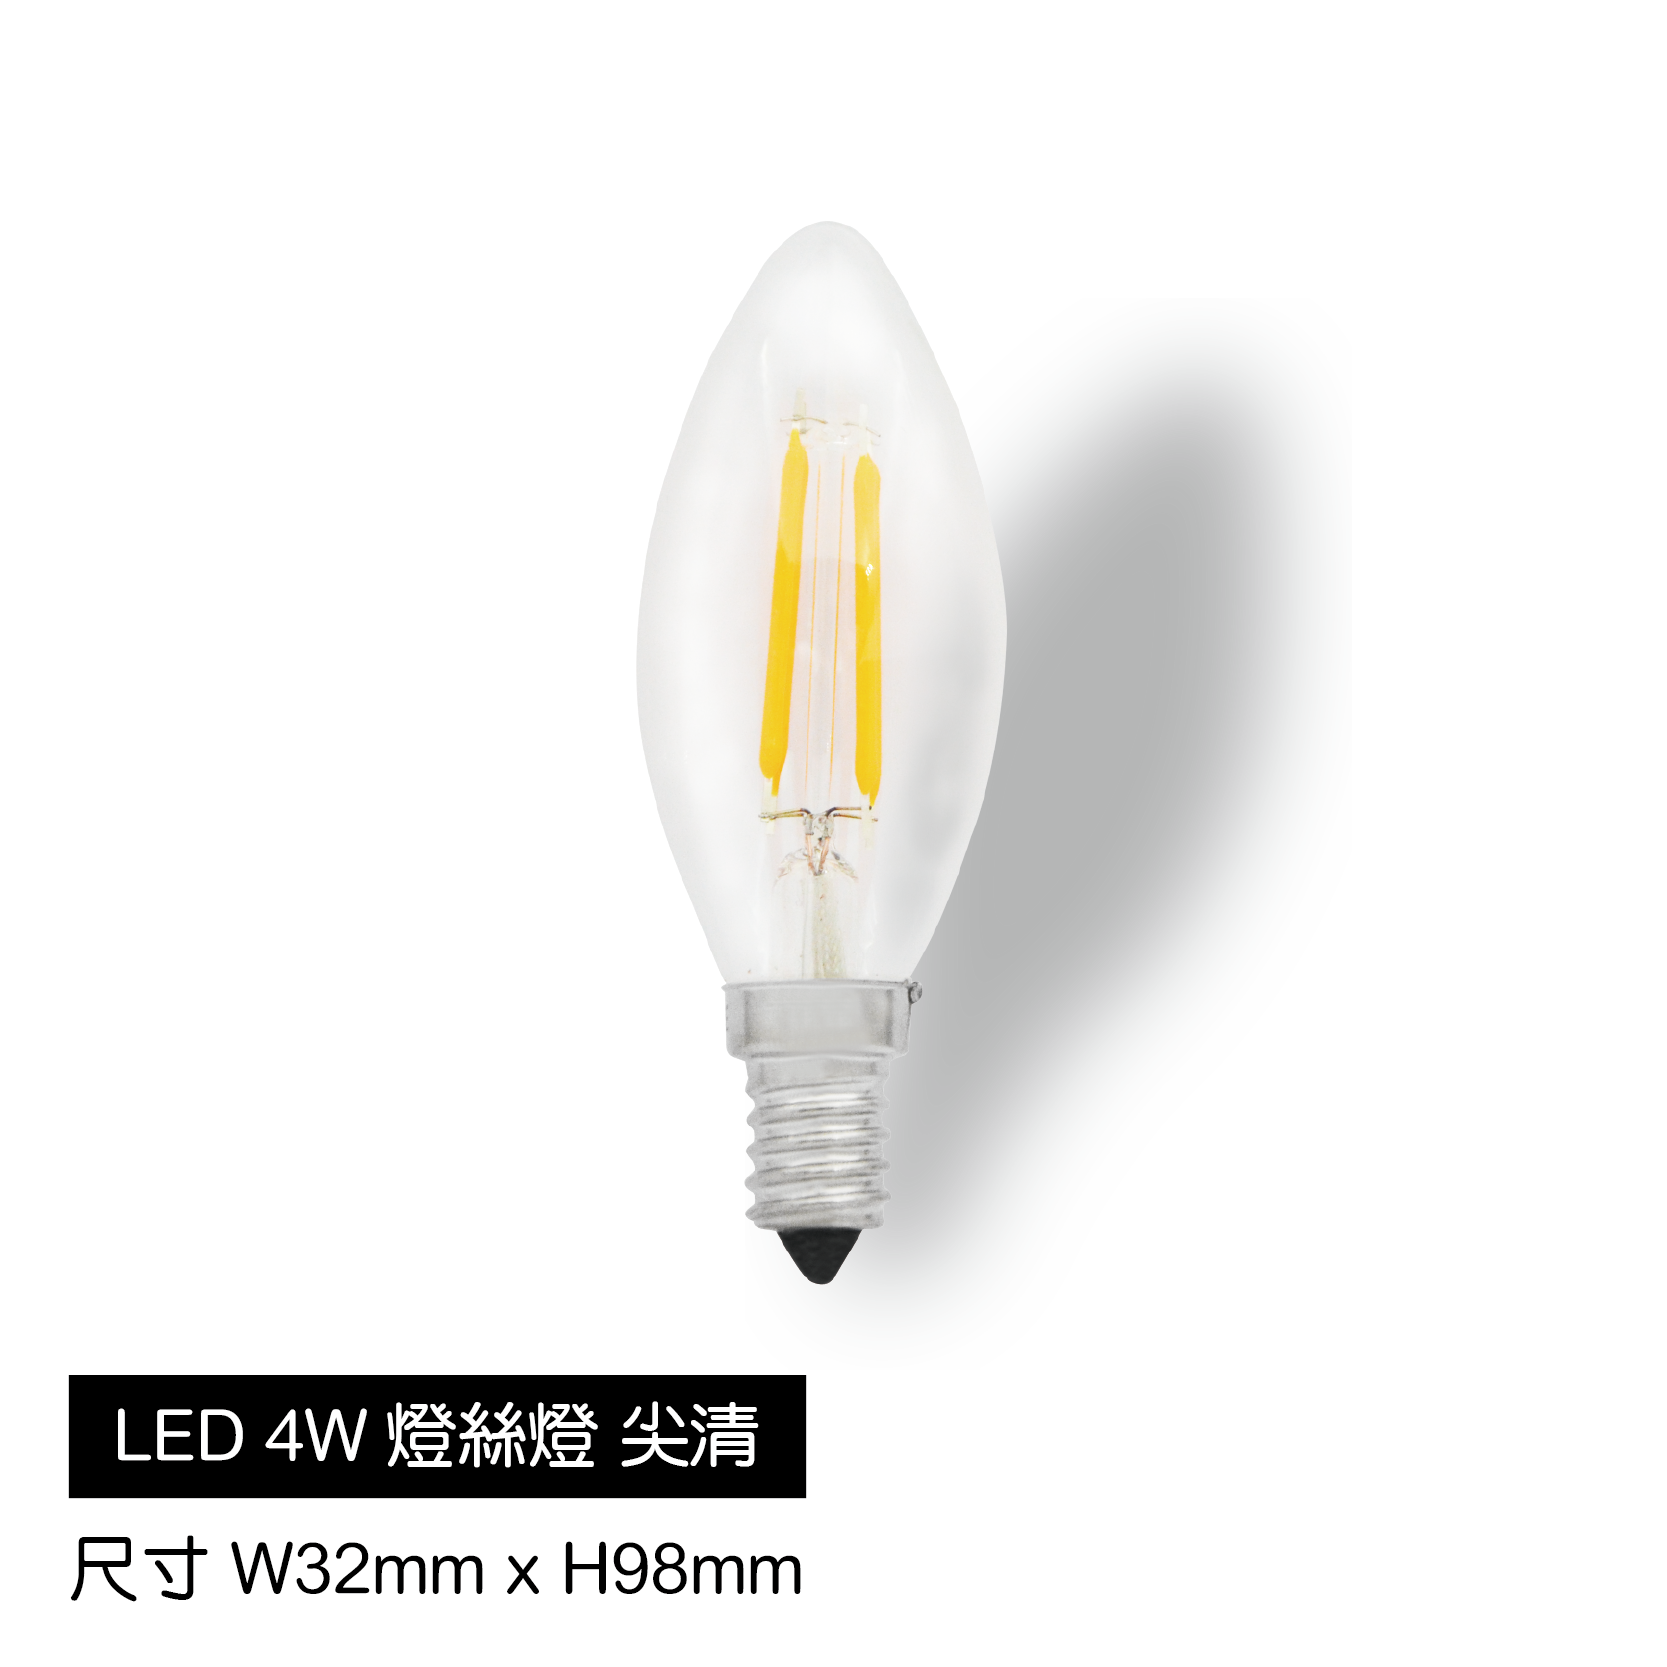 LED-4W燈絲燈[尖清]